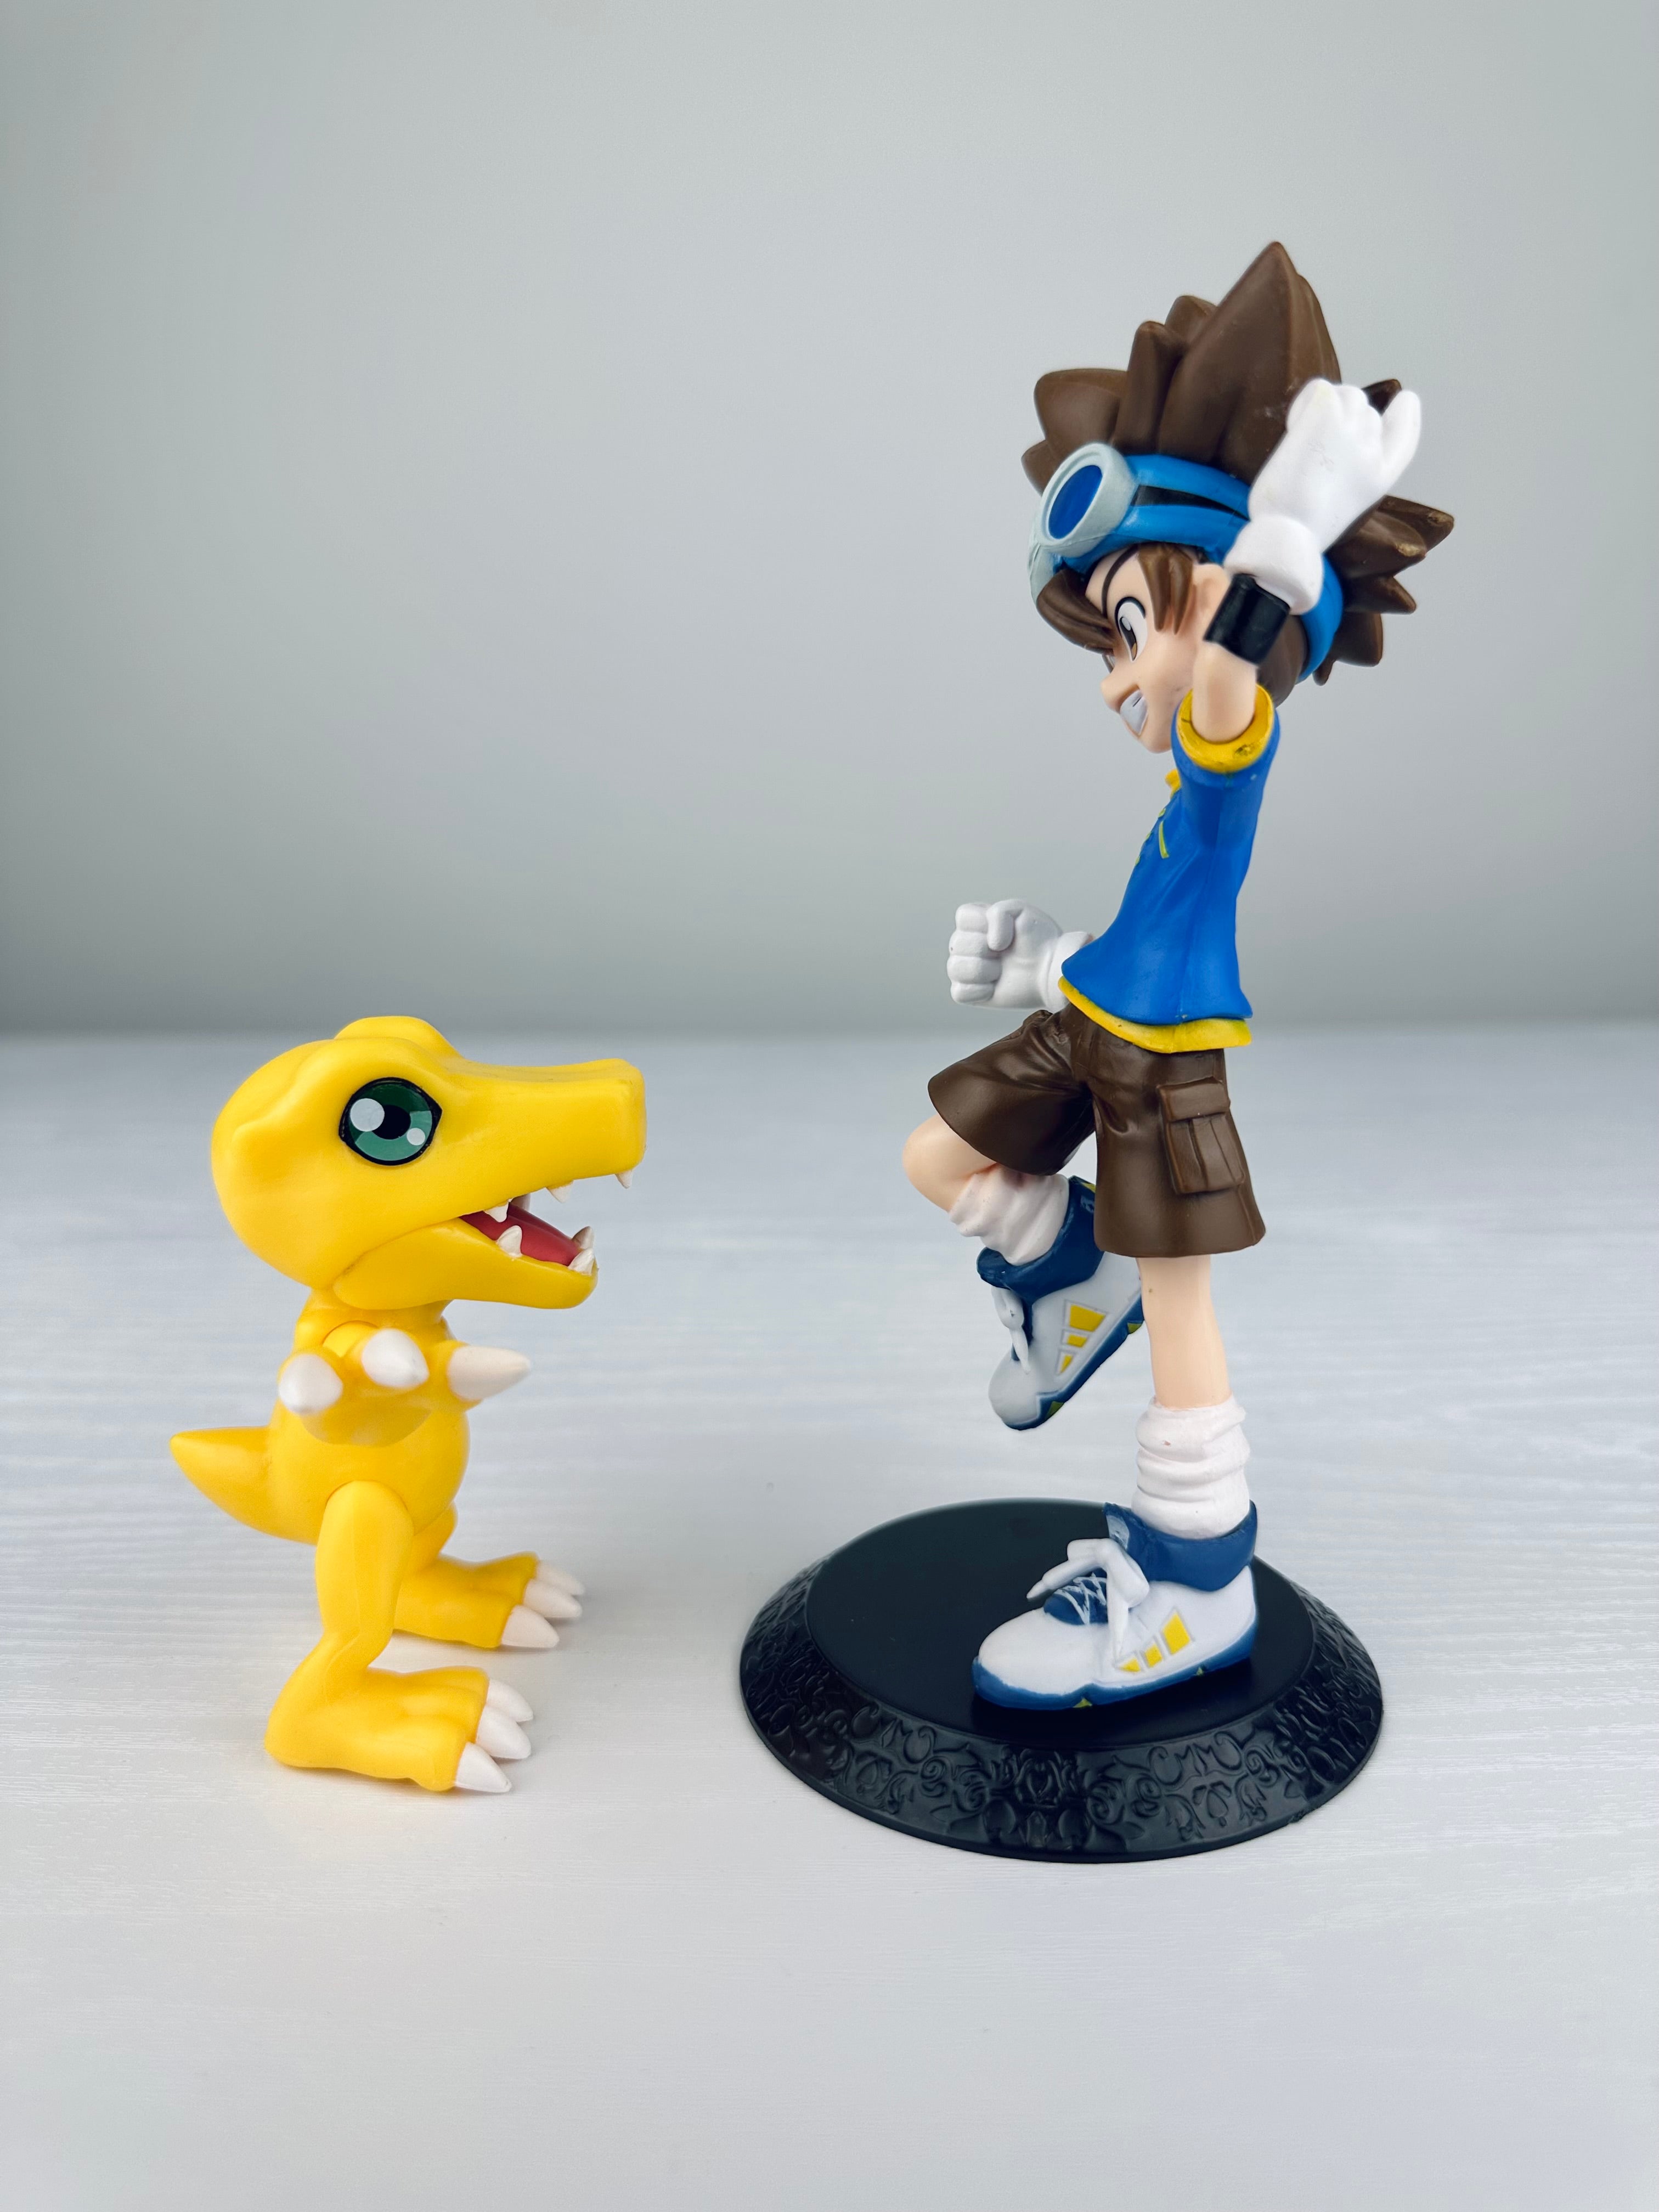 Figuras Digimon - Taichi Yagami e Agumon - 17 cm